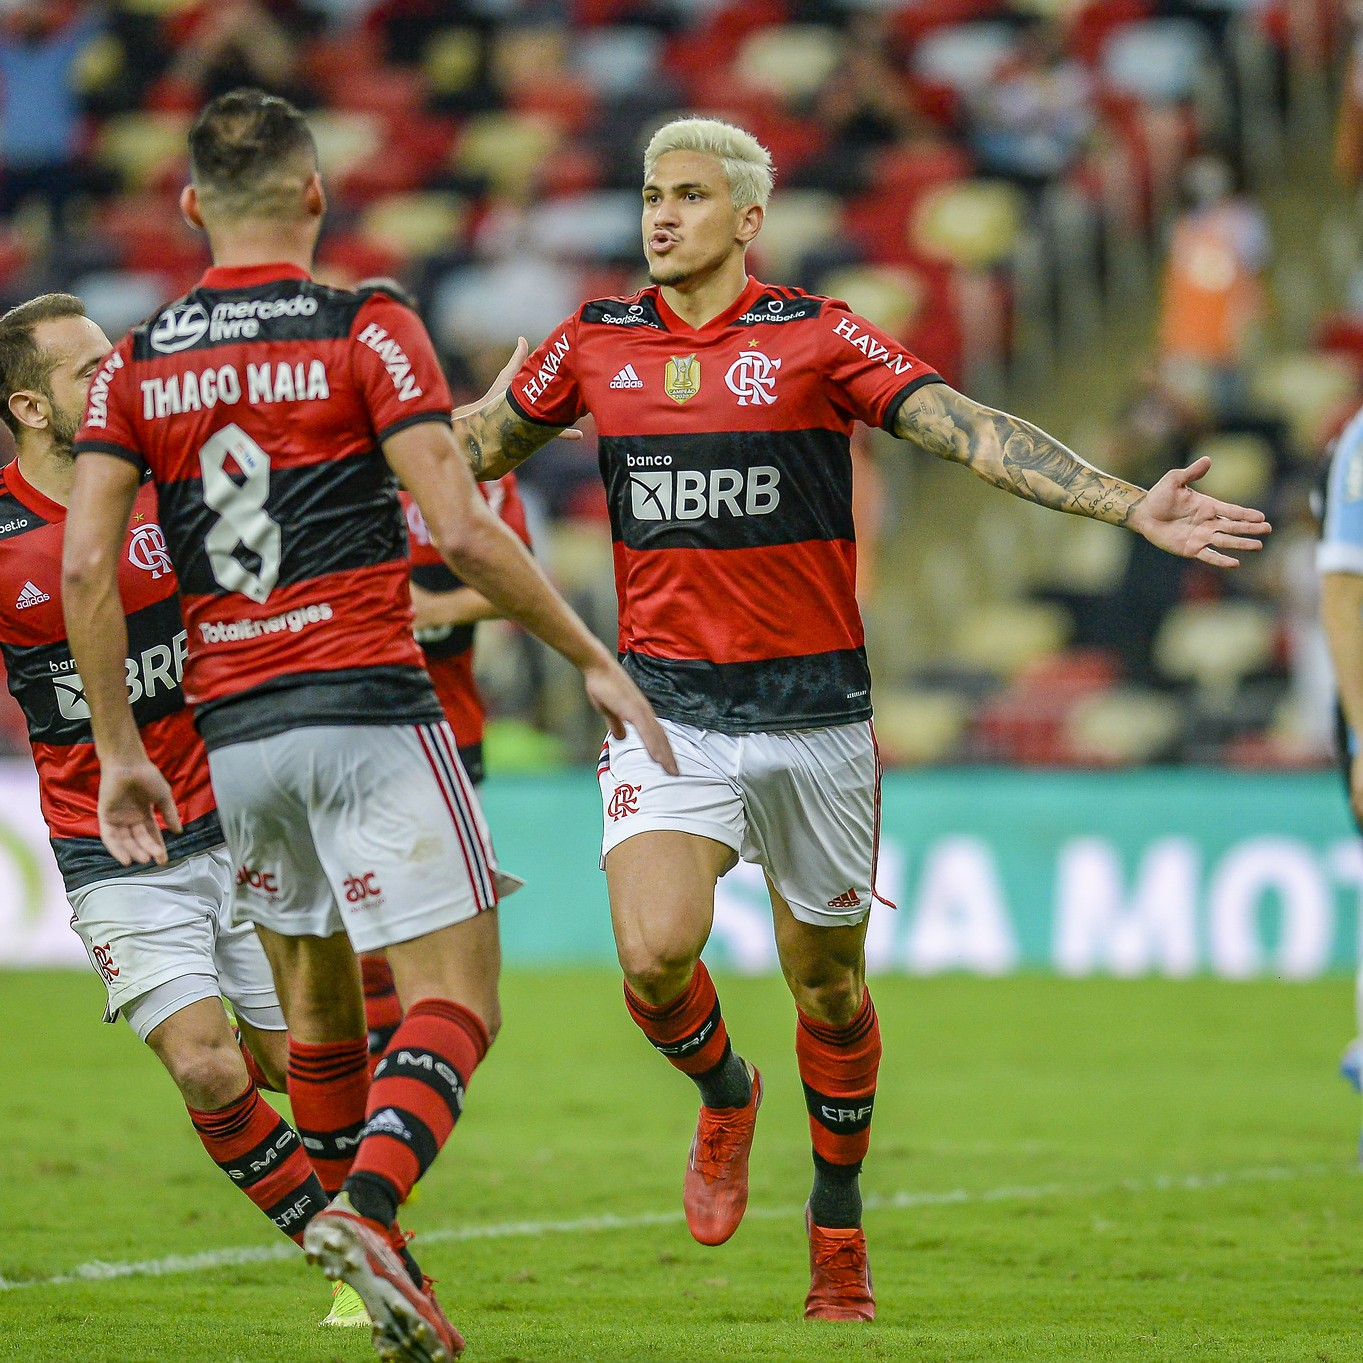 GE Flamengo #170 - O passeio do Fla sobre o Grêmio e a pergunta: Thiago Maia e Matheuzinho merecem ser titulares?